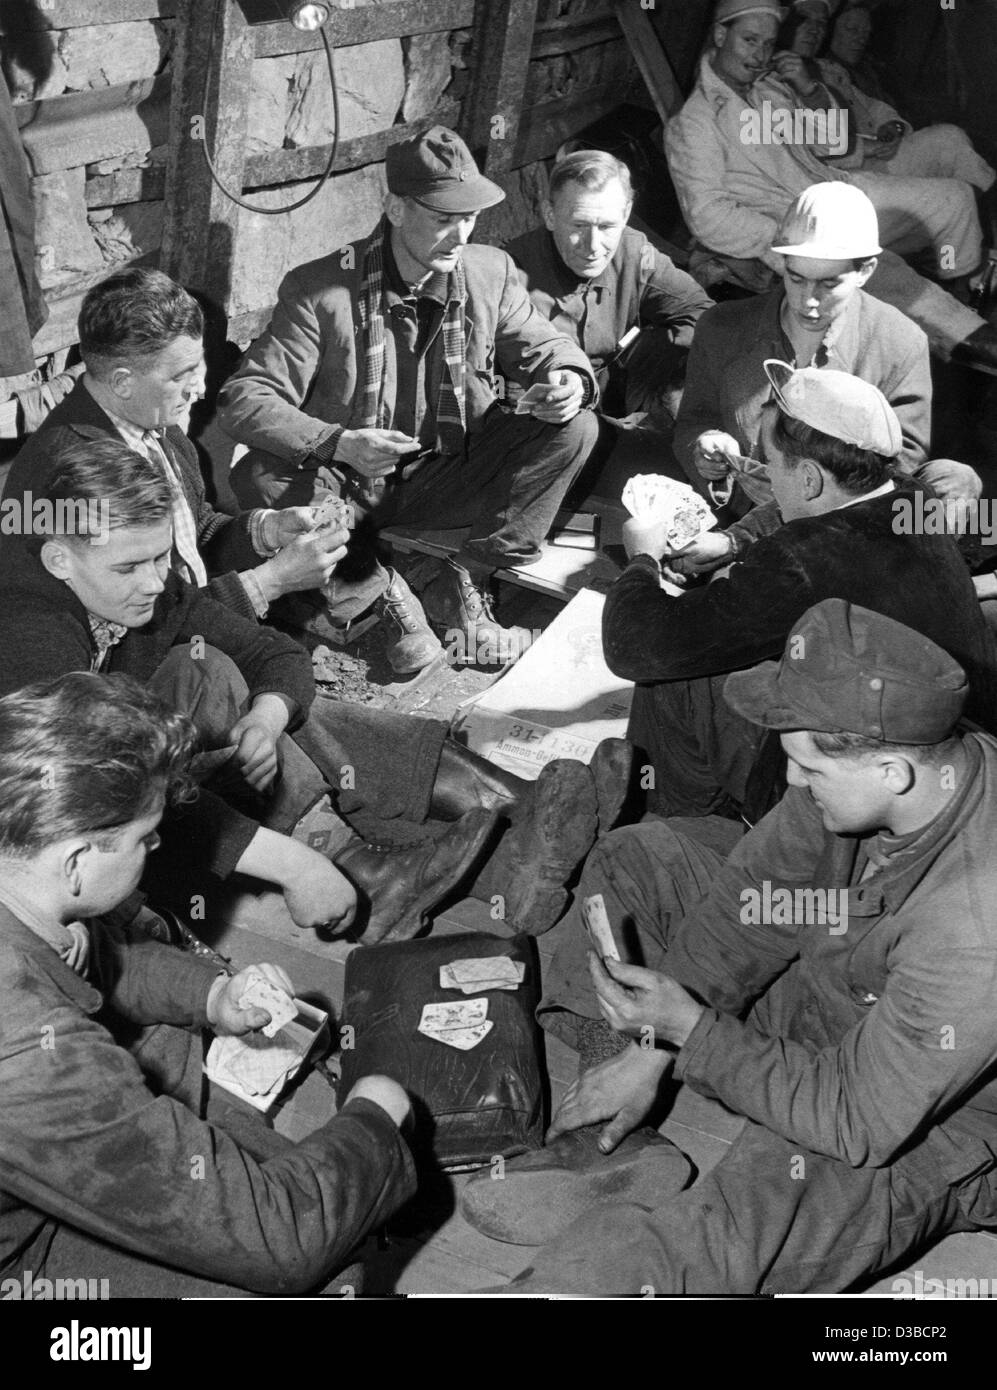 (Dpa file) - minatori giocano a carte durante un sit-in di sciopero nei sotterranei della miniera "Einigkeit Pfannenberger' in Salchendorf, Germania Ovest, 21 dicembre 1961. Metropolitana 250 minatori erano in sciopero per protestare contro la chiusura della miniera. Foto Stock